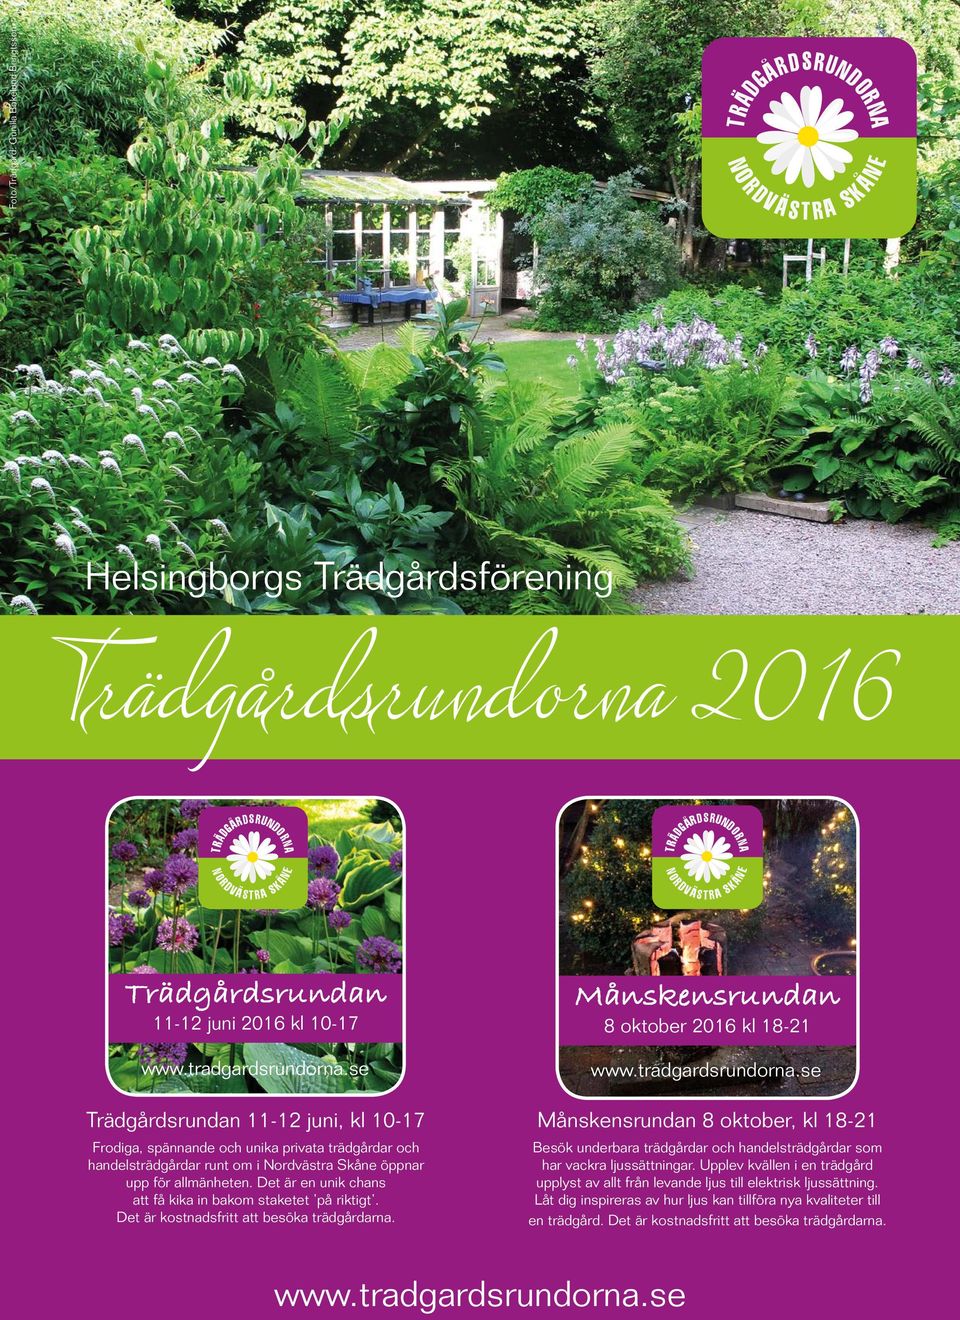 se Trädgårdsrundan 11-12 juni, kl 10-17 Frodiga, spännande och unika privata trädgårdar och handelsträdgårdar runt om i Nordvästra Skåne öppnar upp för allmänheten.